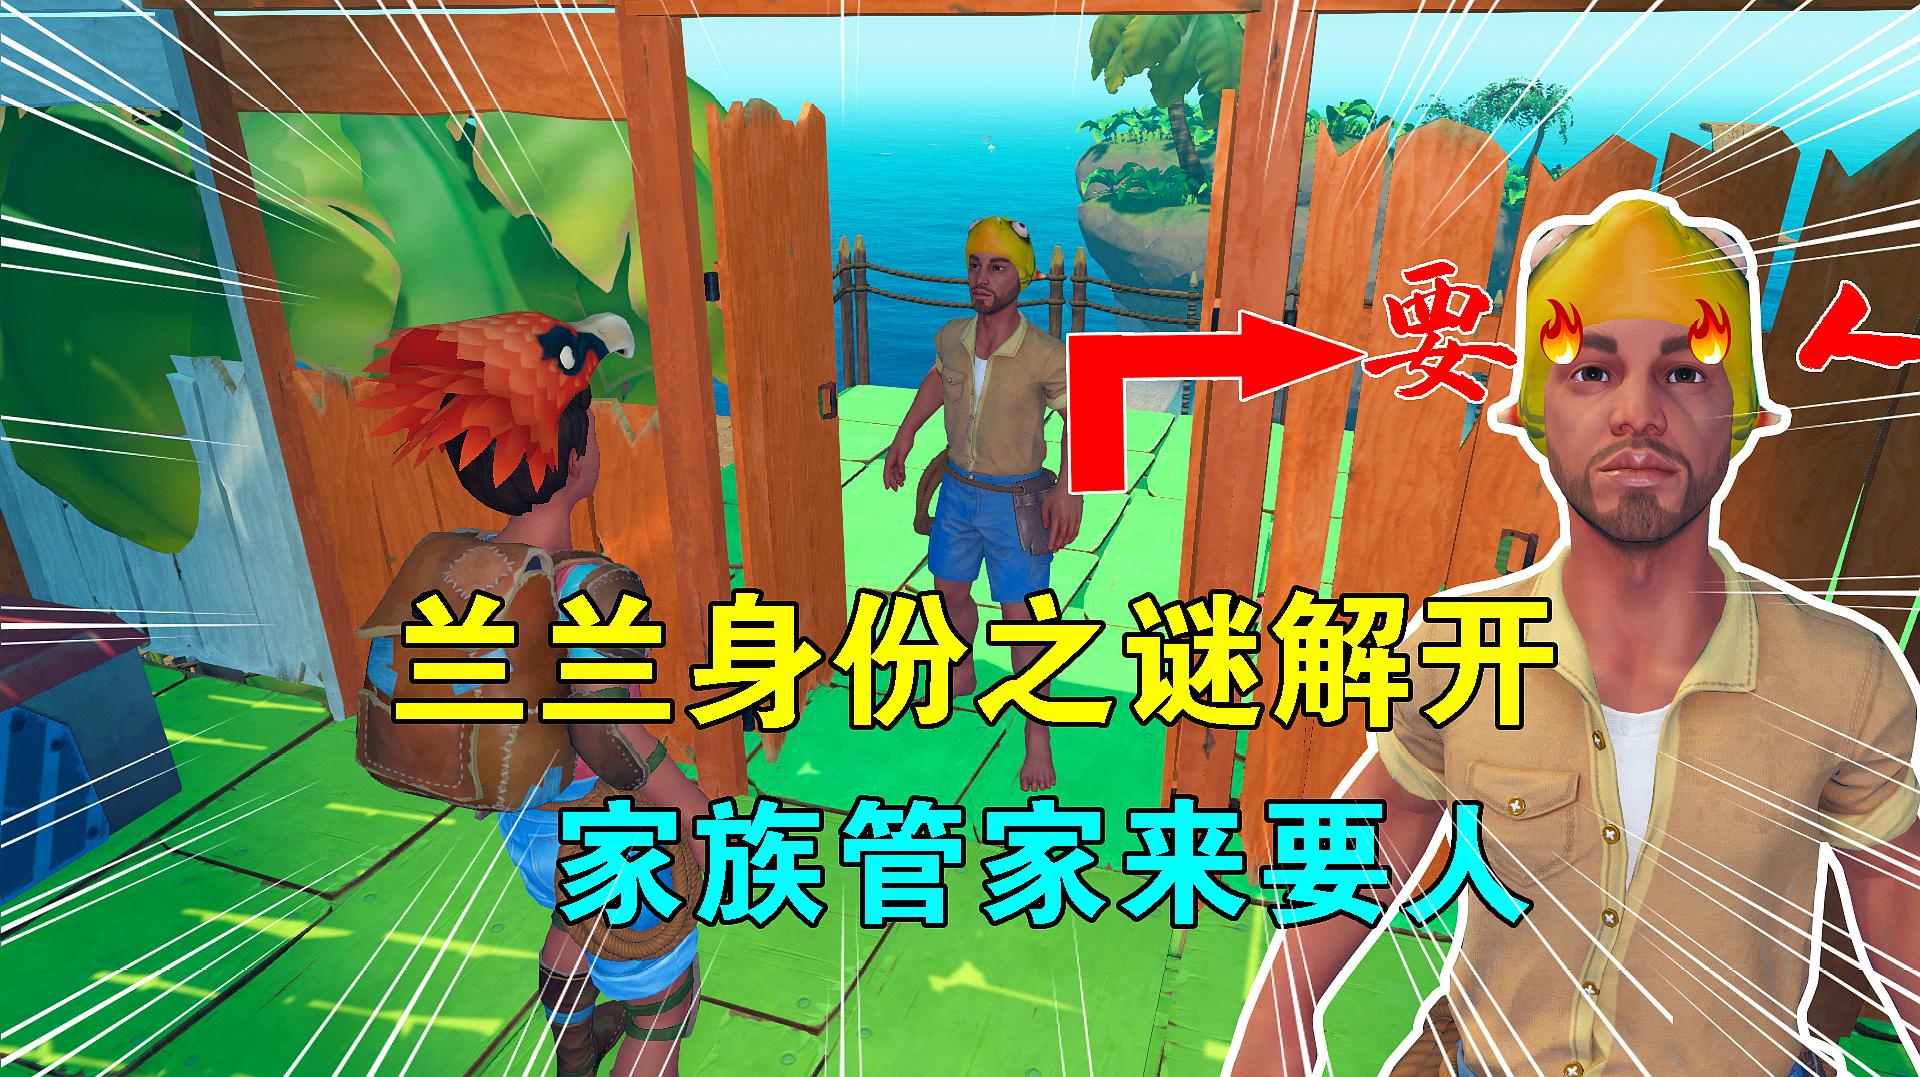 小辉哥游戏解说:沙盒类游戏《木筏求生》的视频合集(五)